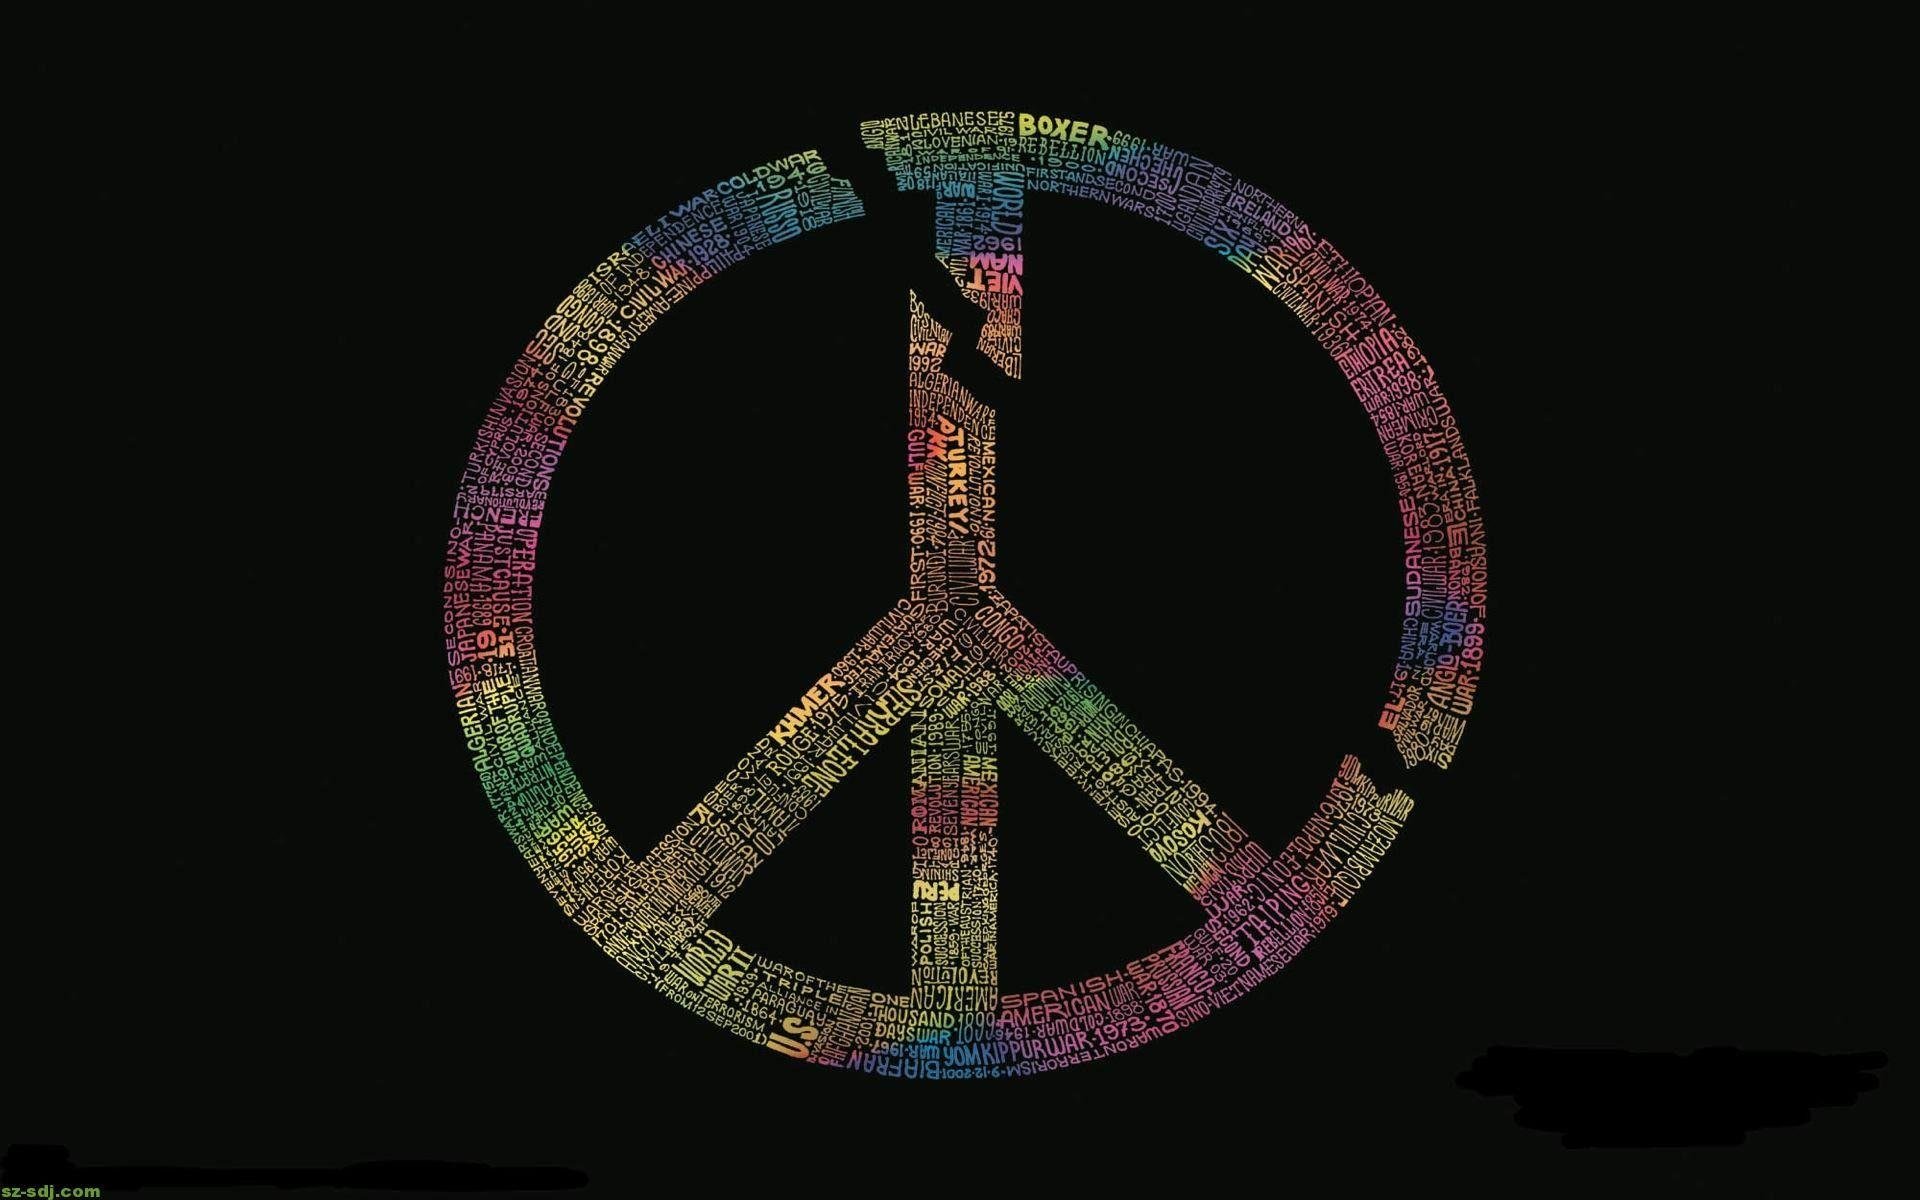 3D Peace Sign Wallpaper